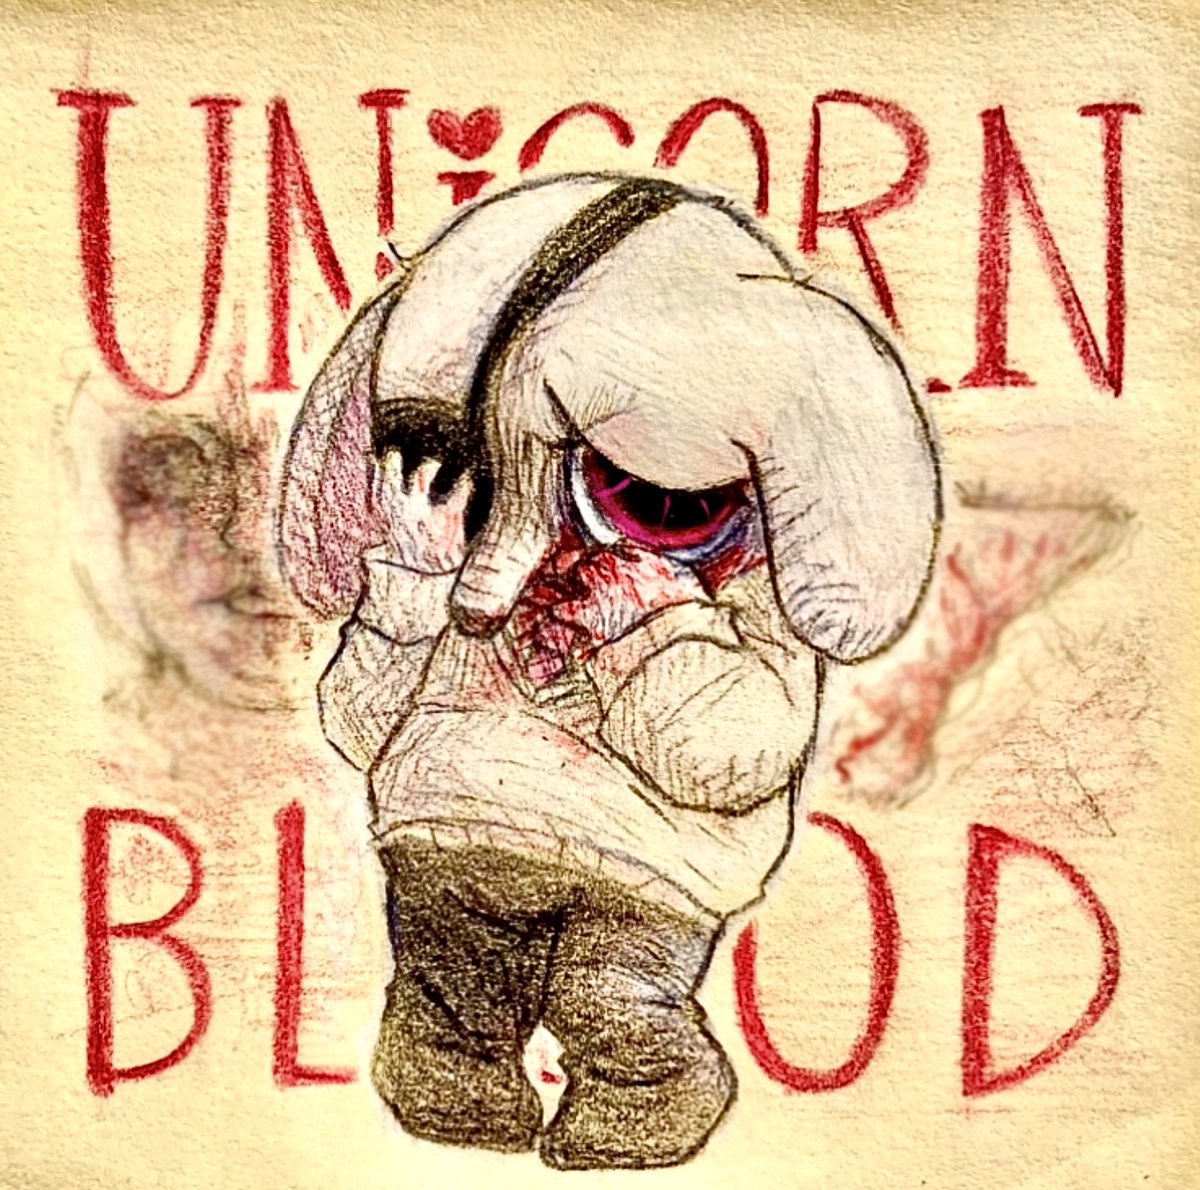 #unicornblood #unicornbloodfanart
Is that…GREGORIO?!?!